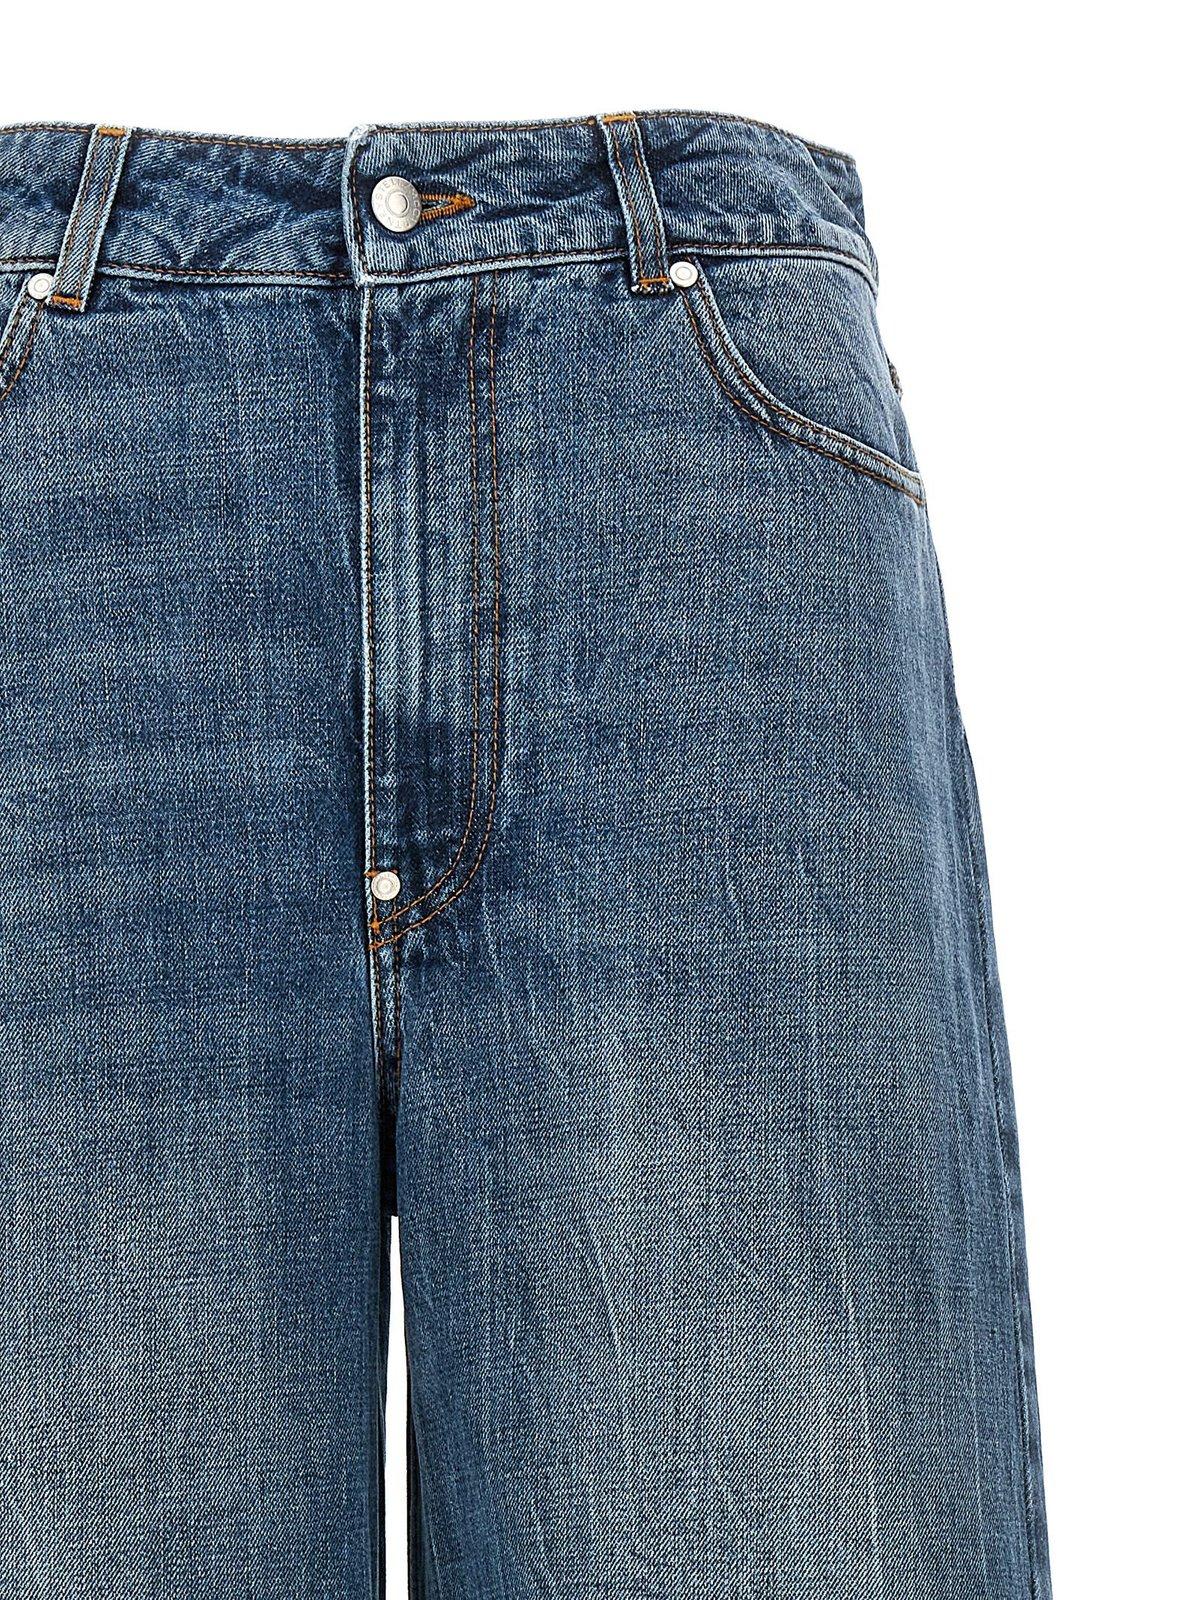 Shop Stella Mccartney Vintage Wide-leg Jeans In Blue